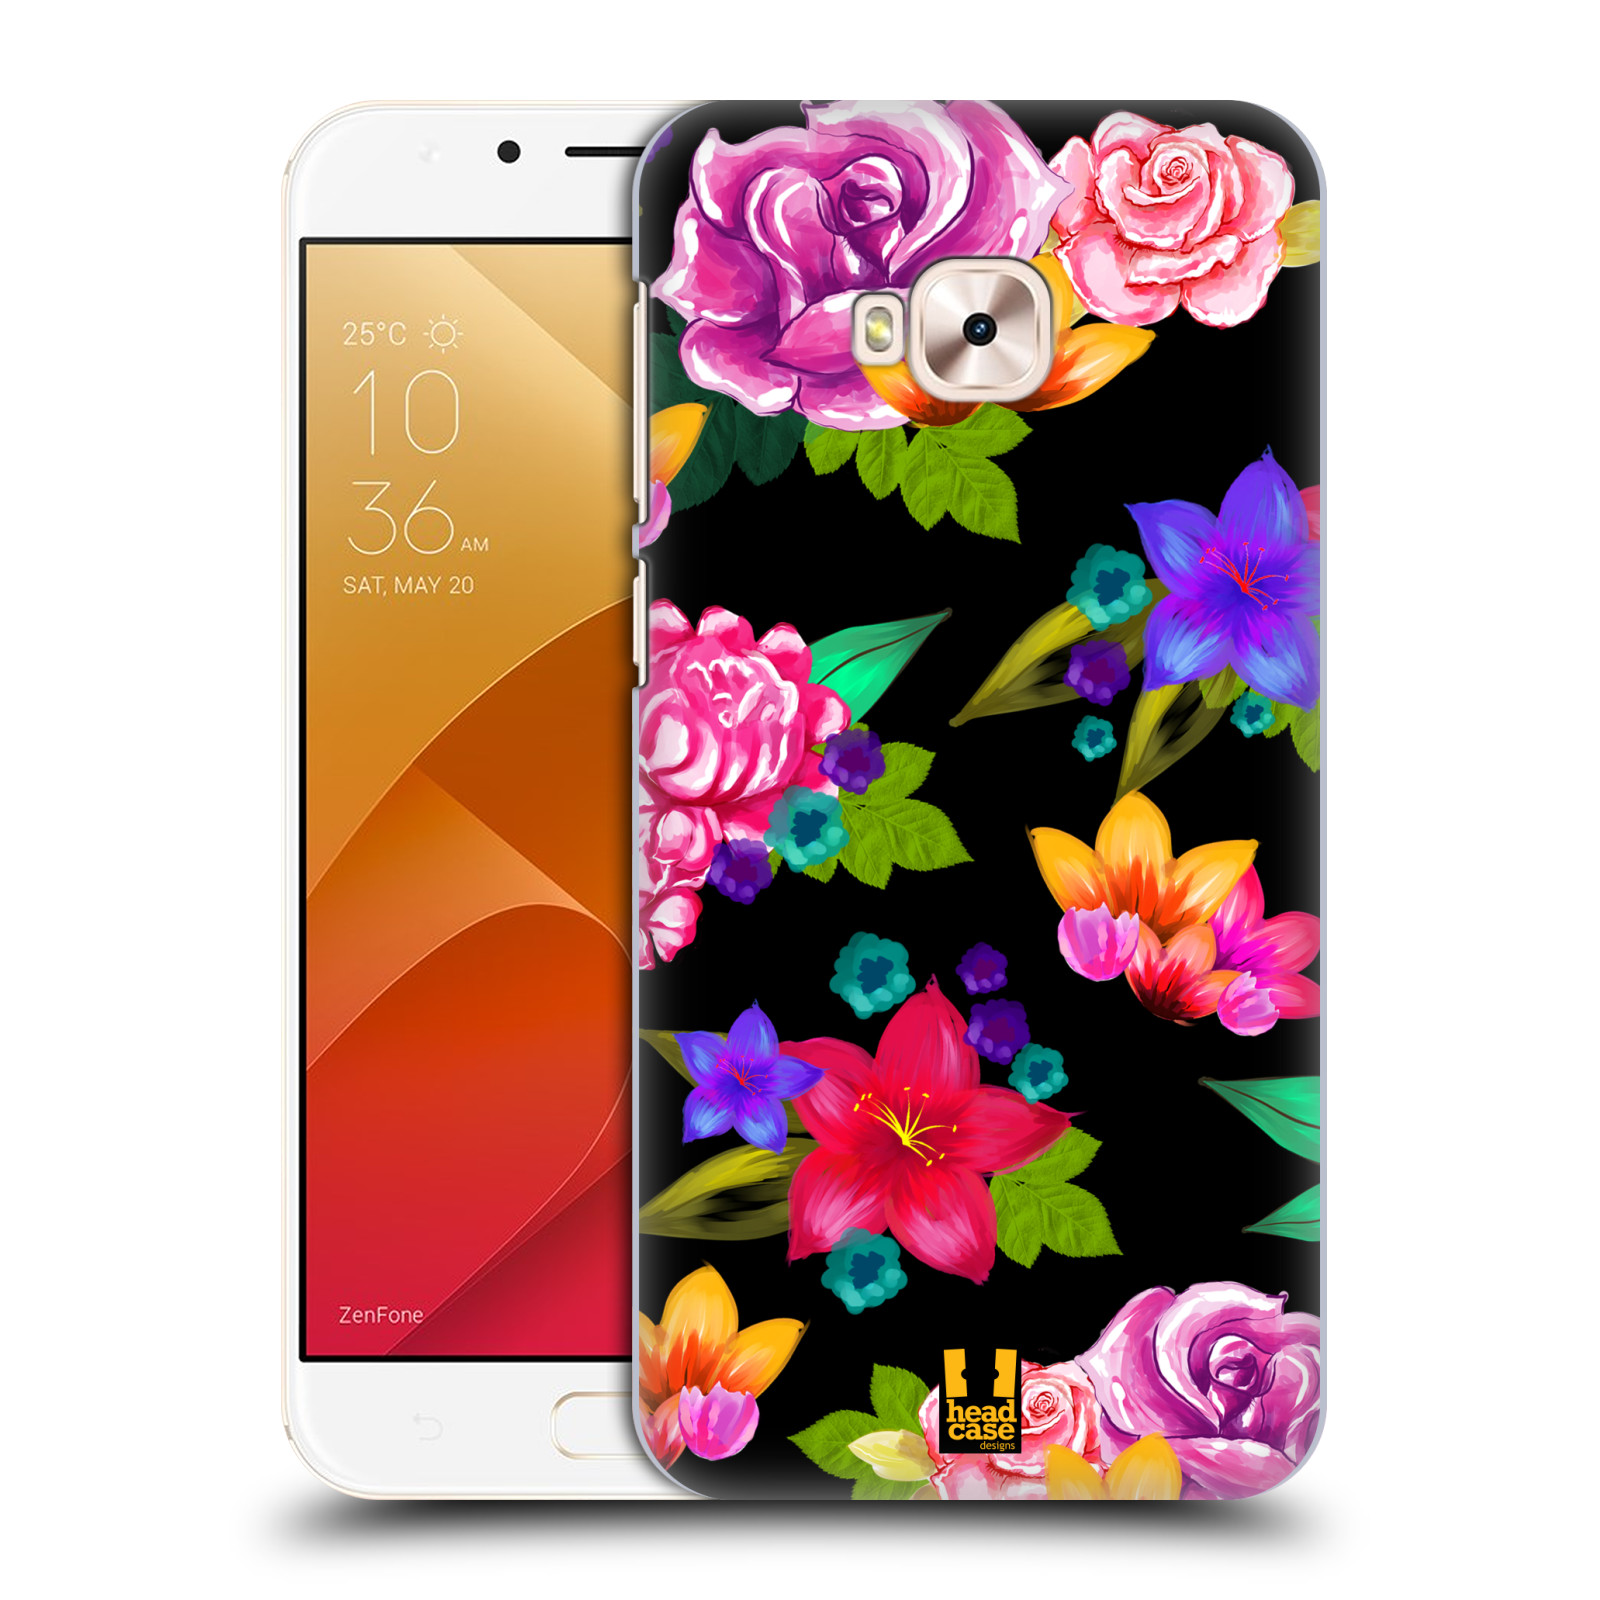 HEAD CASE plastový obal na mobil Asus Zenfone 4 Selfie Pro ZD552KL vzor Malované květiny barevné ČERNÁ